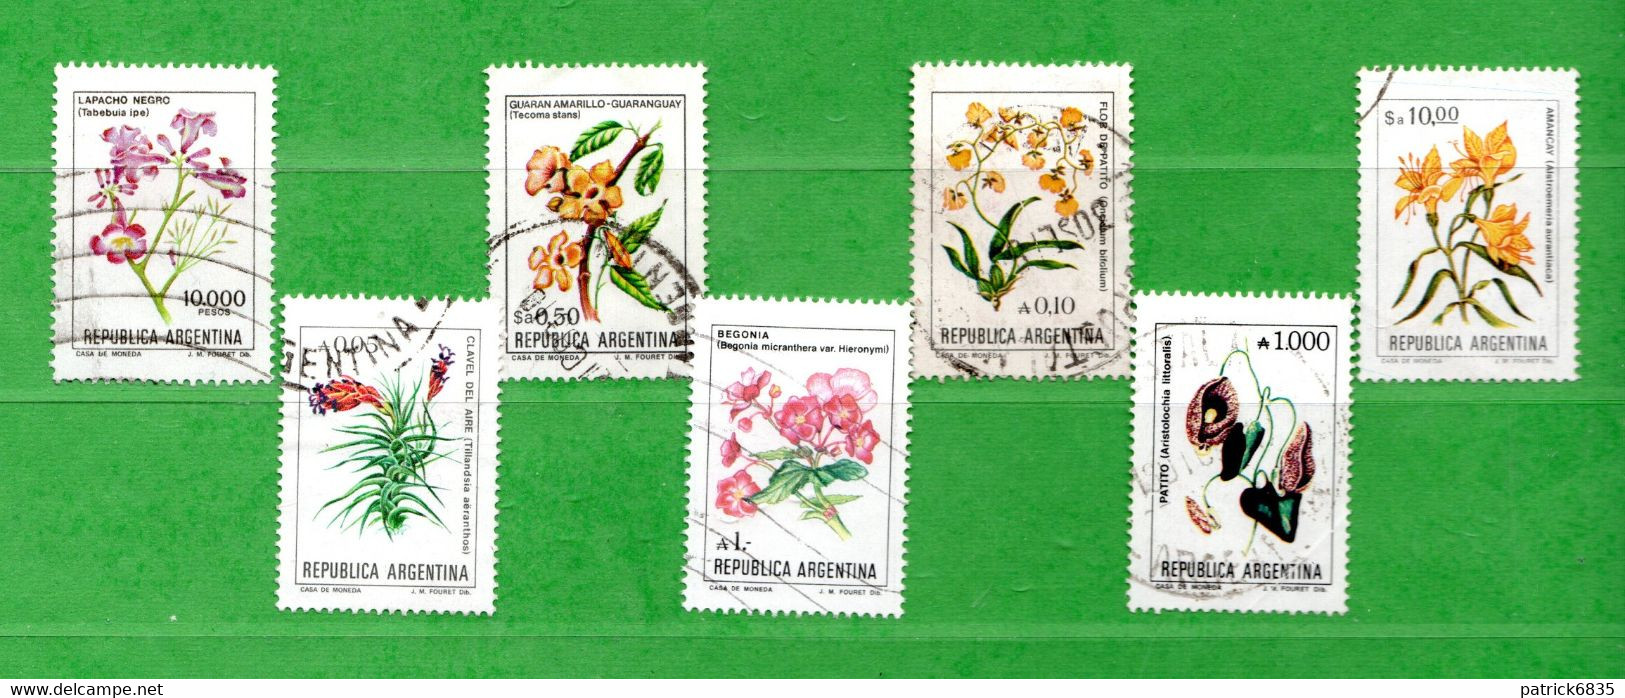 (Us.7) Argentina ° 1982 à 1989 - Fleurs -  Yvert. 1293-1353-1356-1390-1474-1480-1708.  Oblitérer. - Used Stamps